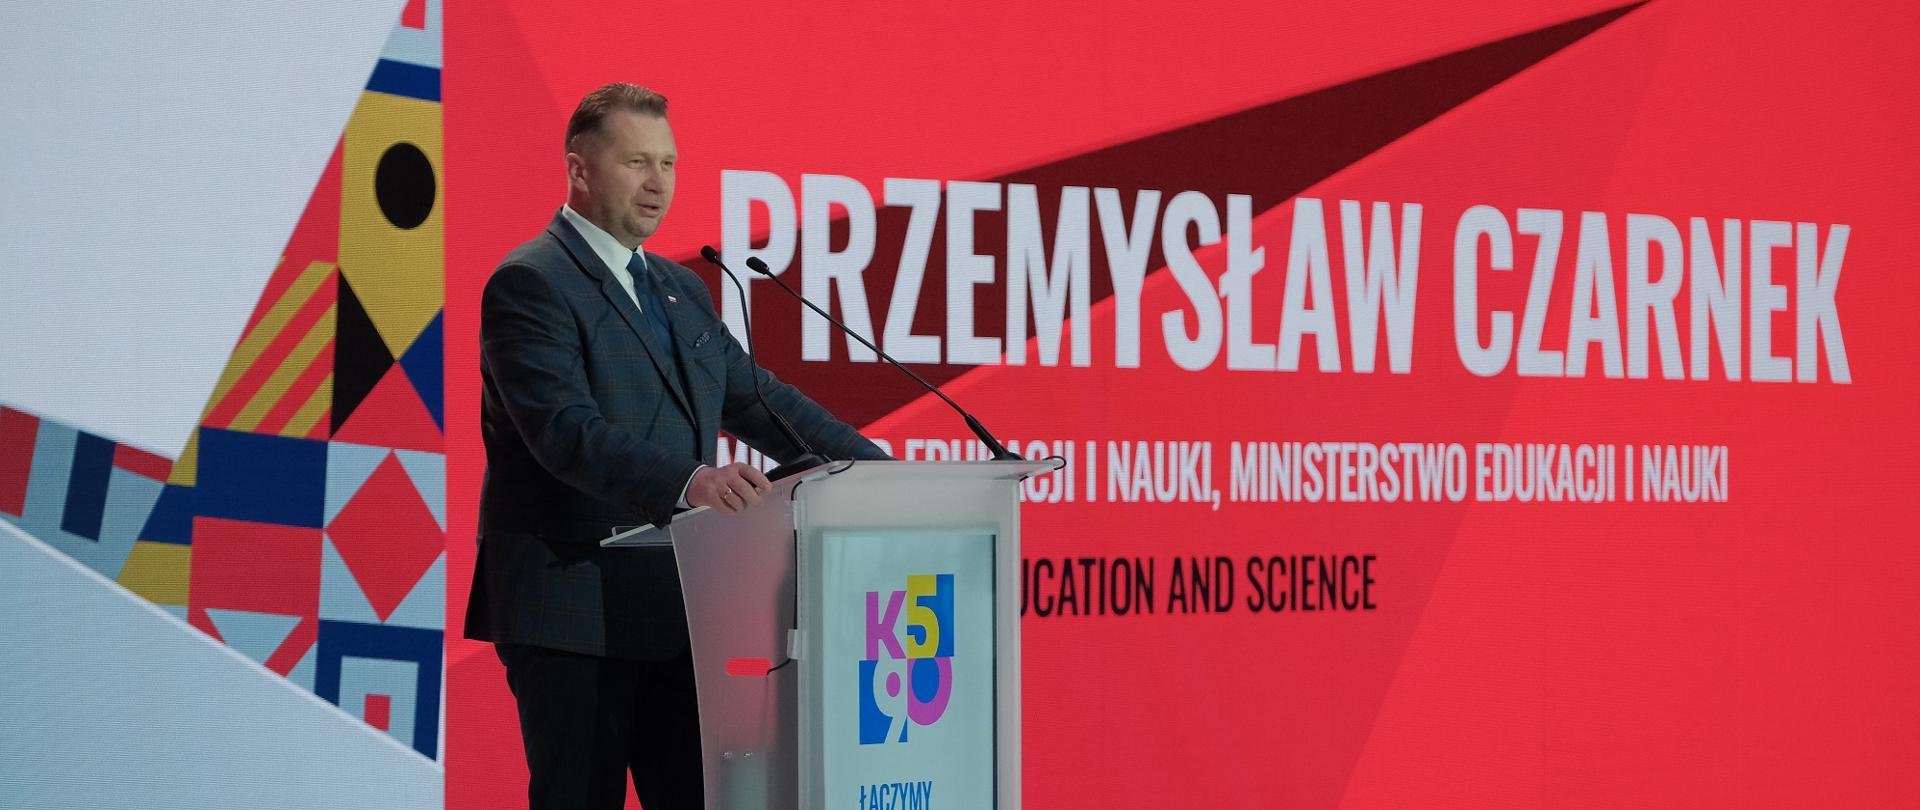 Minister Czarnek stoi na mównicy i mówi do dwóch mikrofonów, za nim czerwona ściana z napisem Przemysław Czarnek.